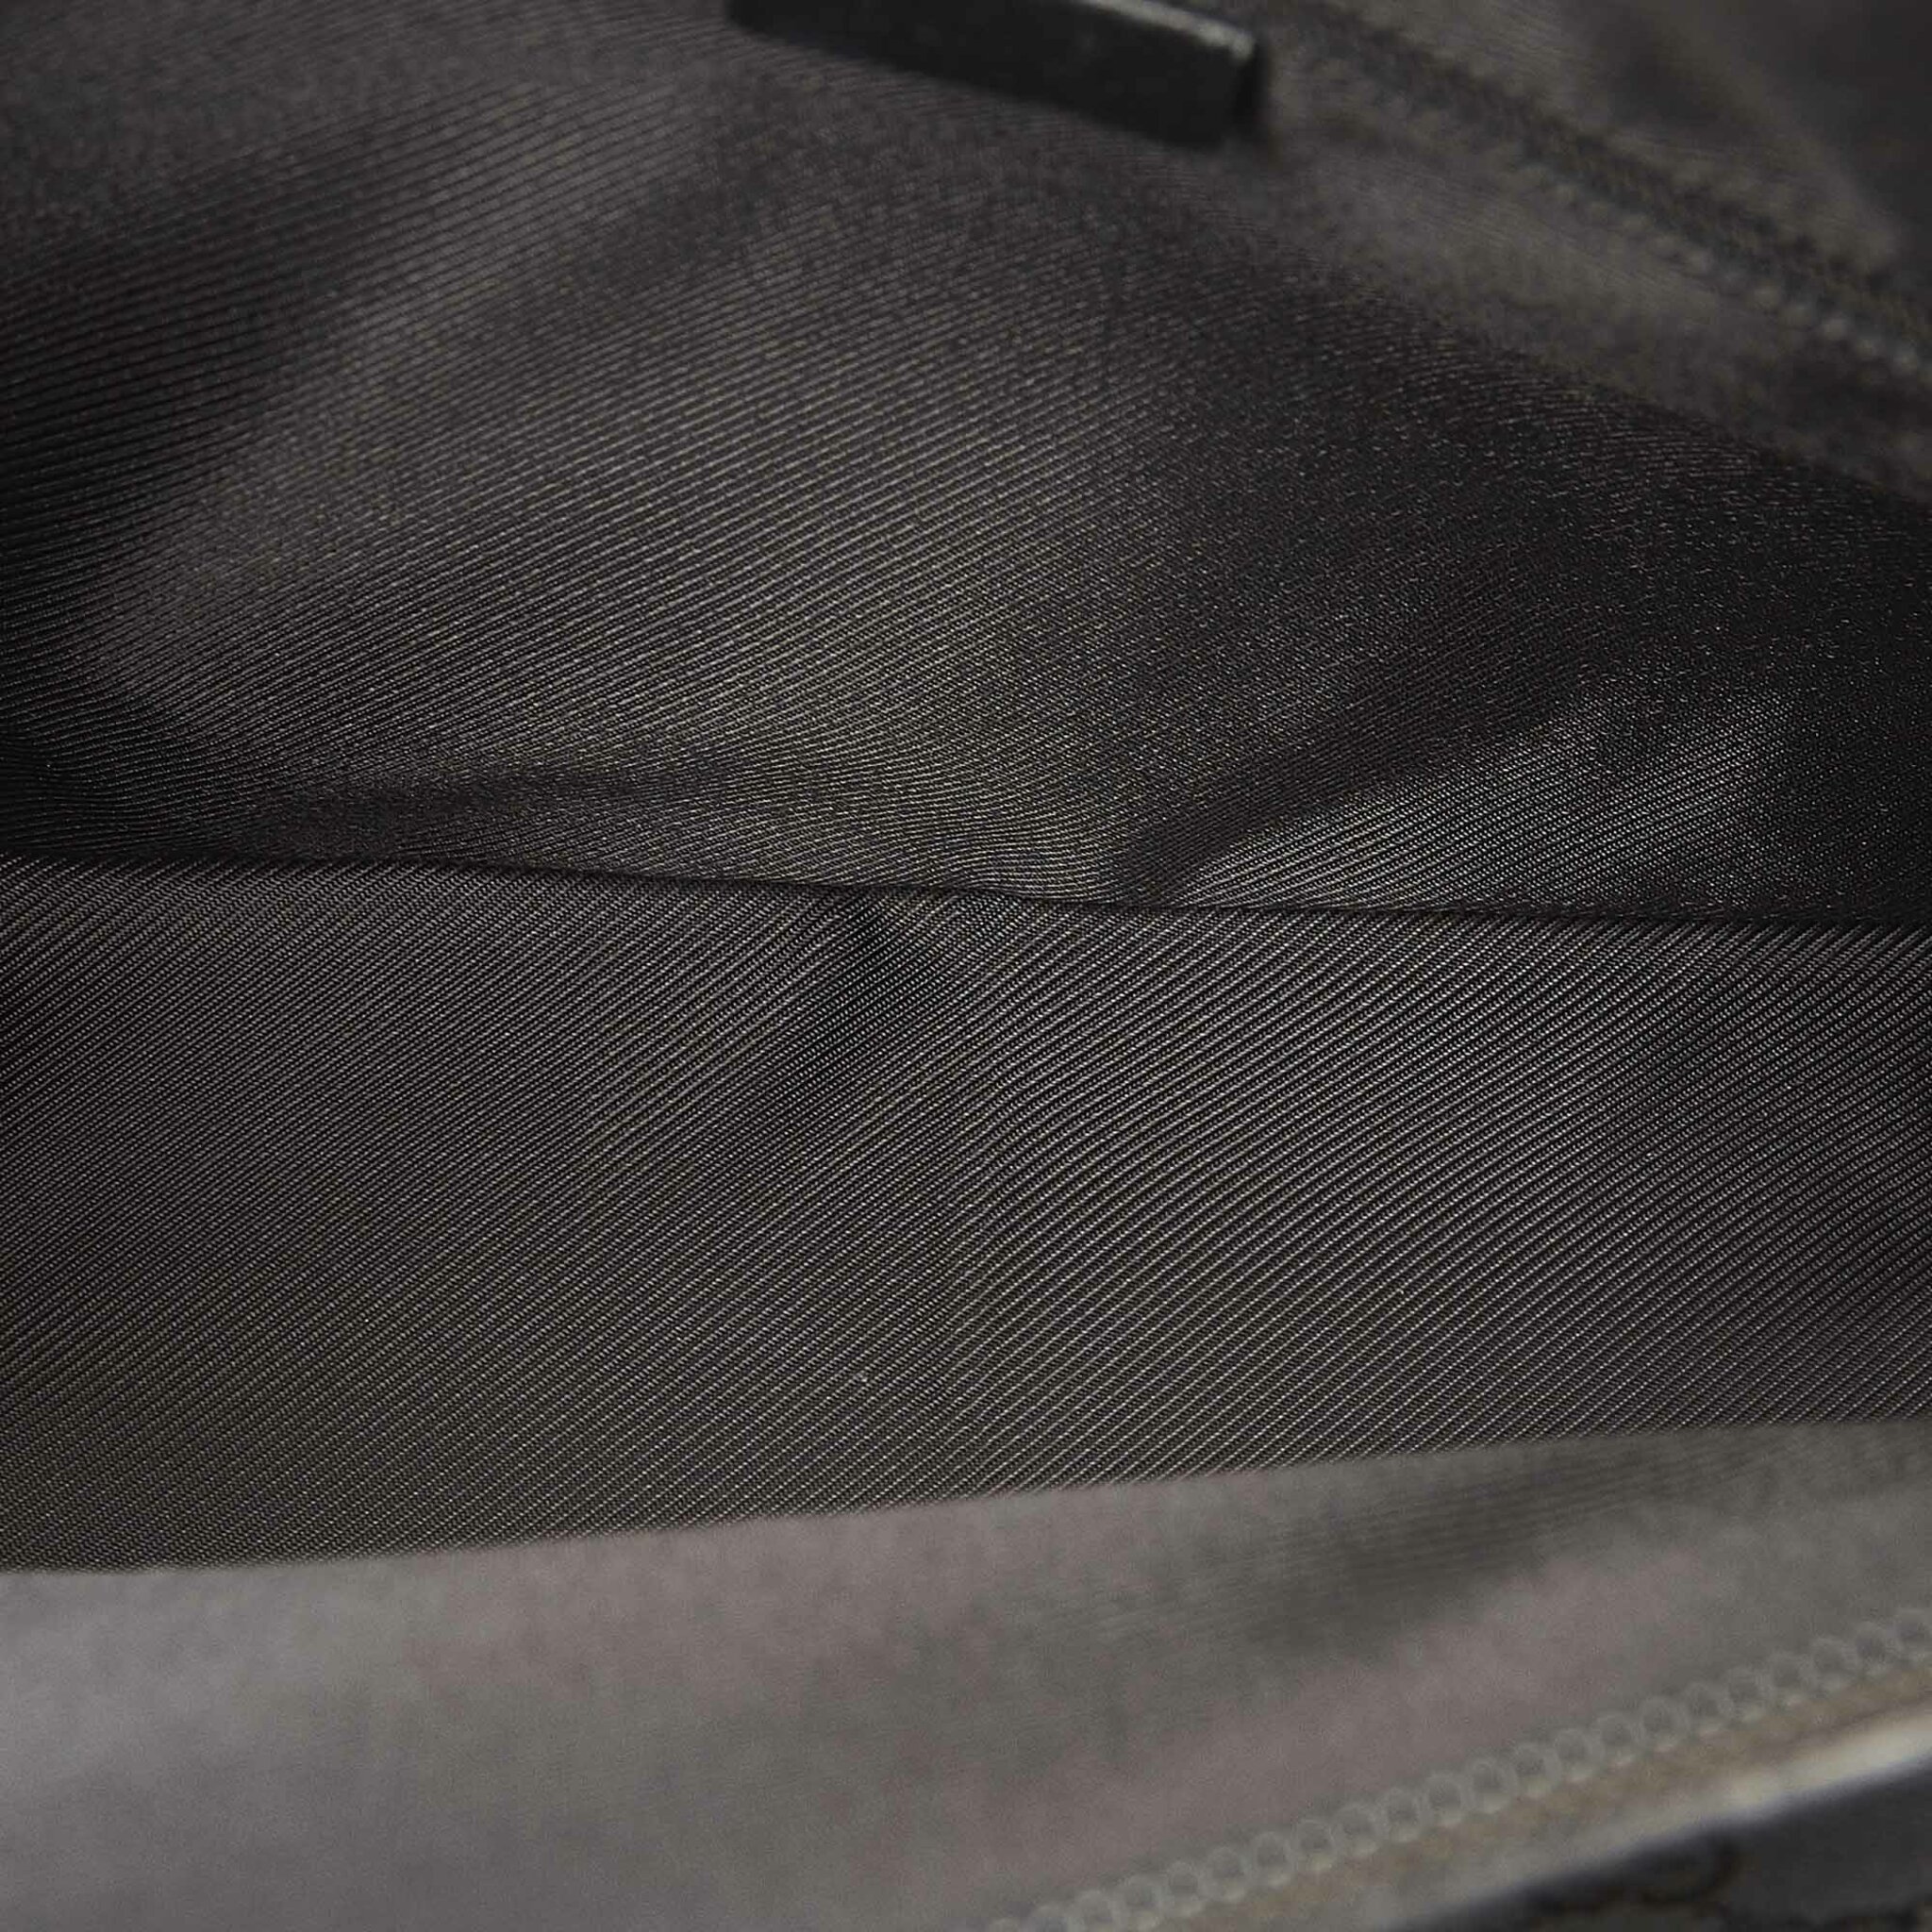 Gucci Gg Canvas Tote Bag, black